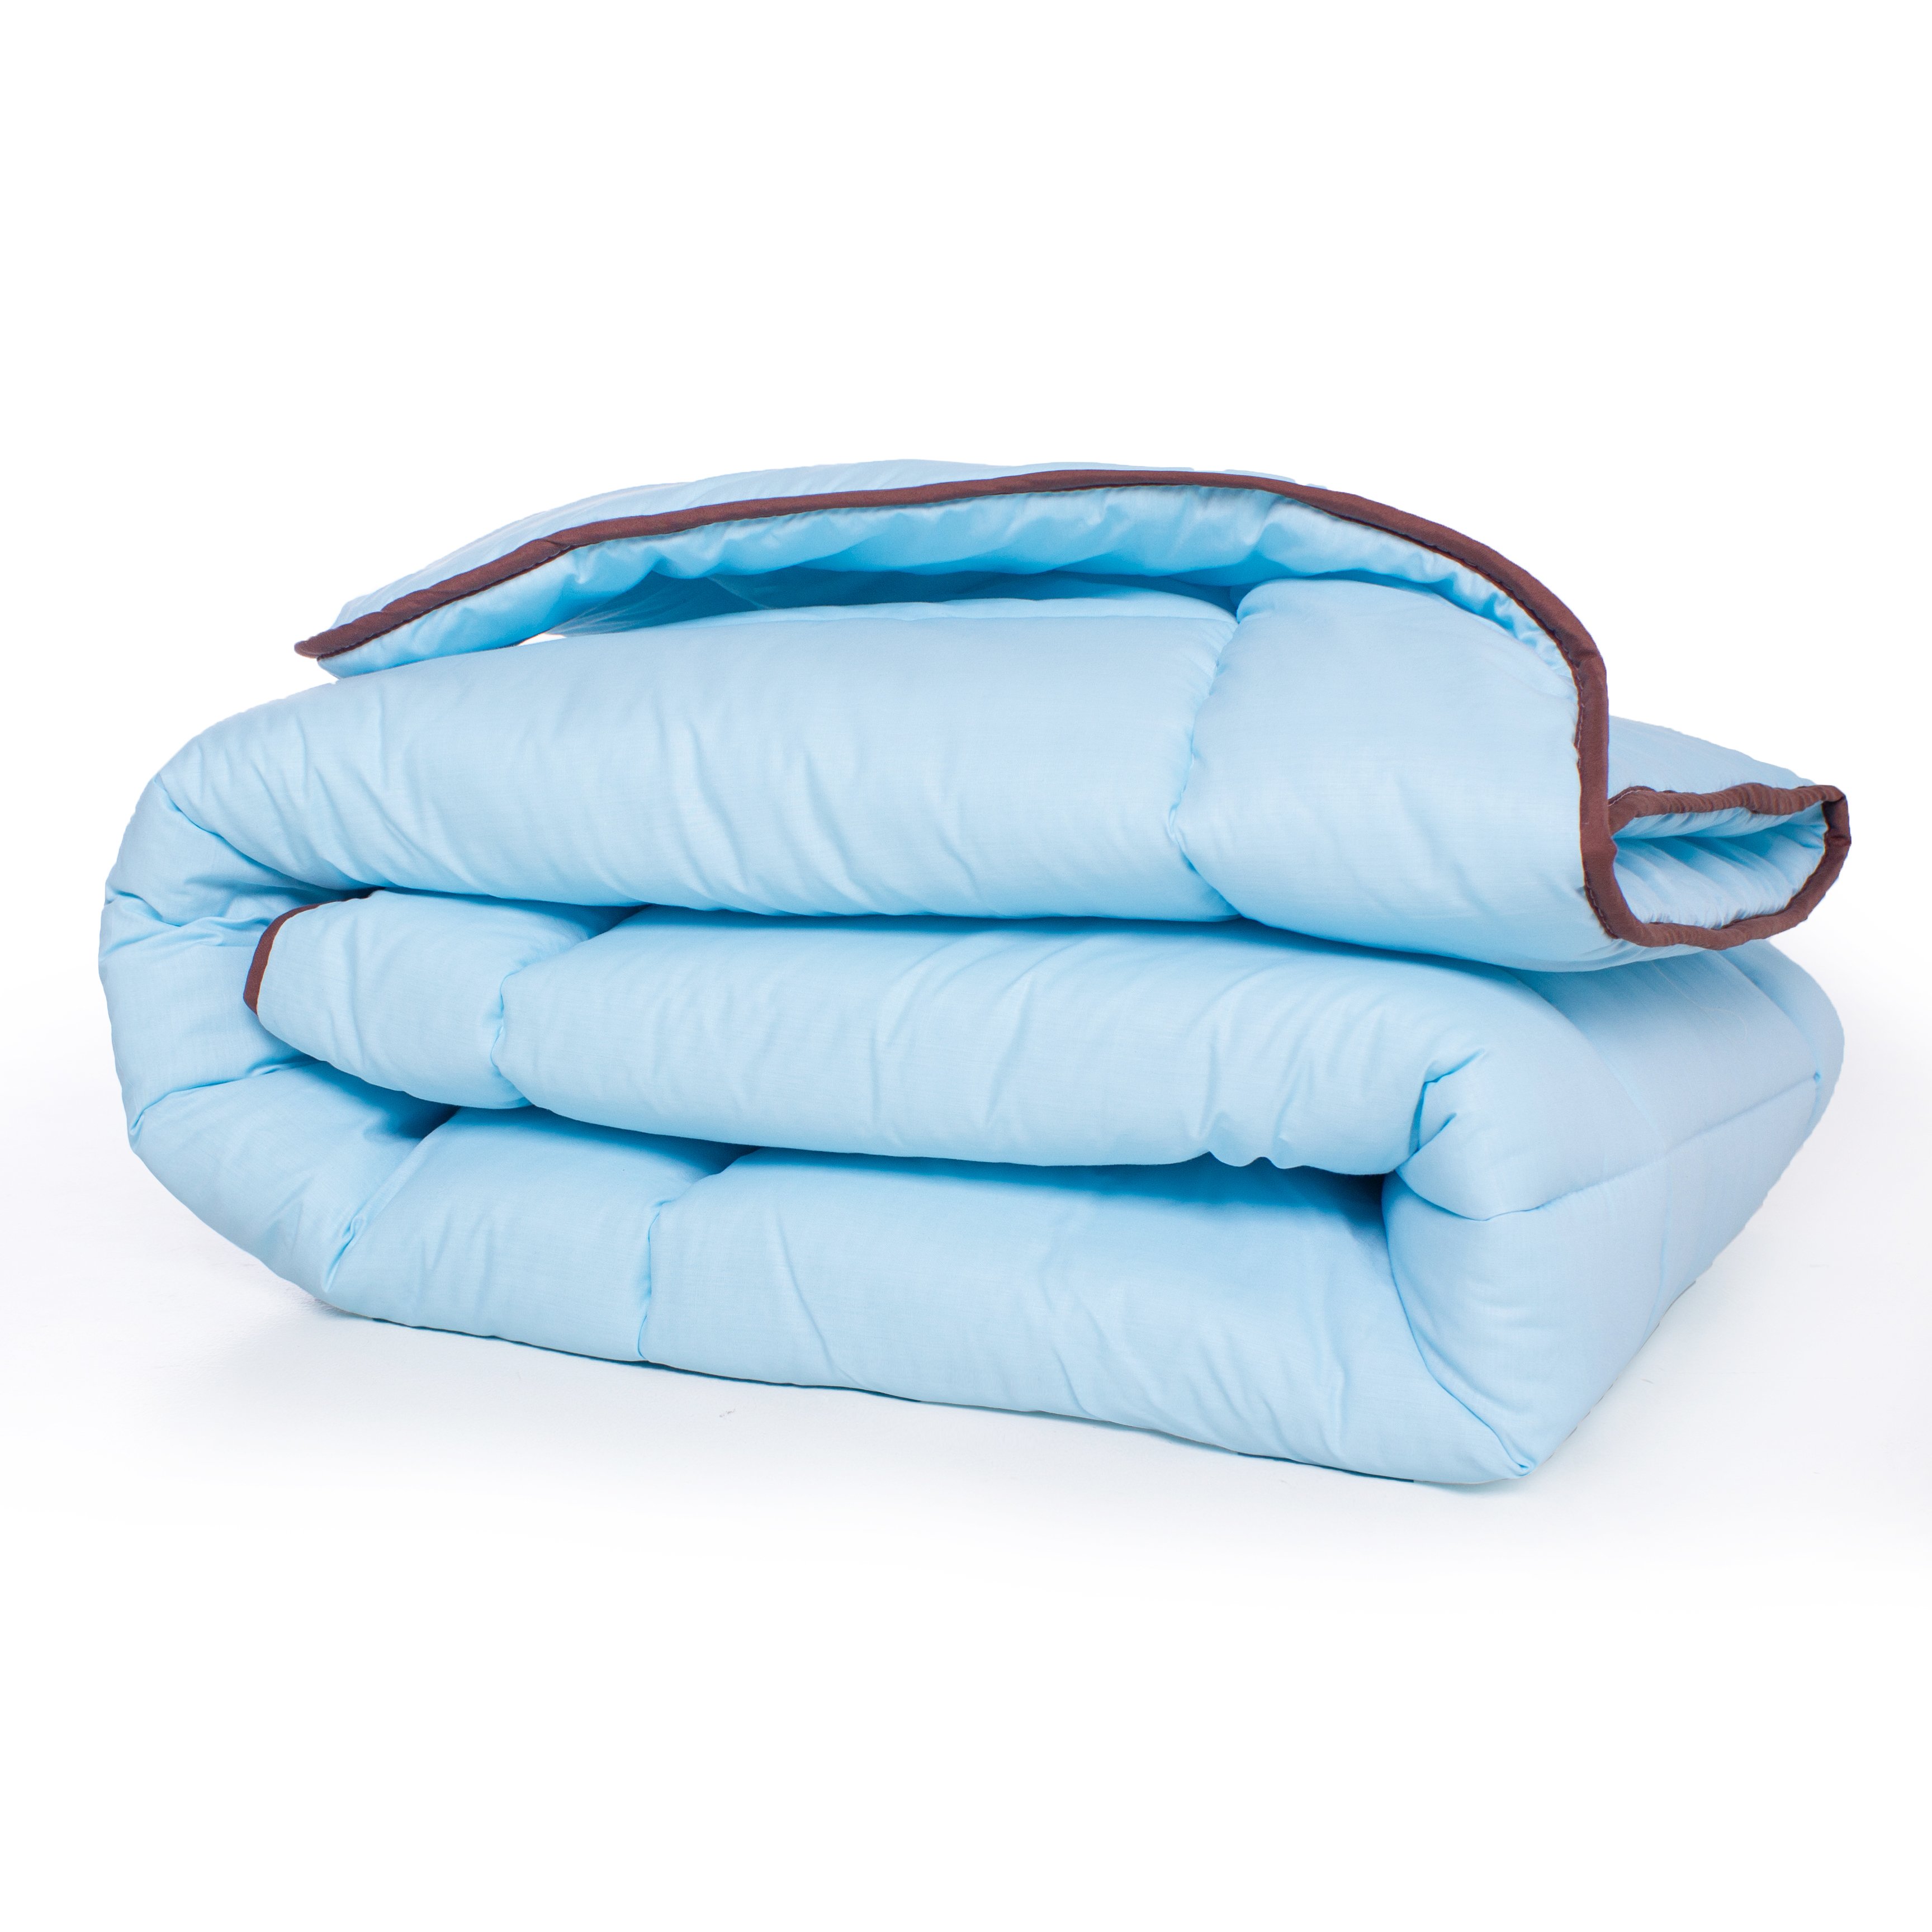 Одеяло шерстяное MirSon Valentino №0338, зимнее, 200x220 см, голубое - фото 2